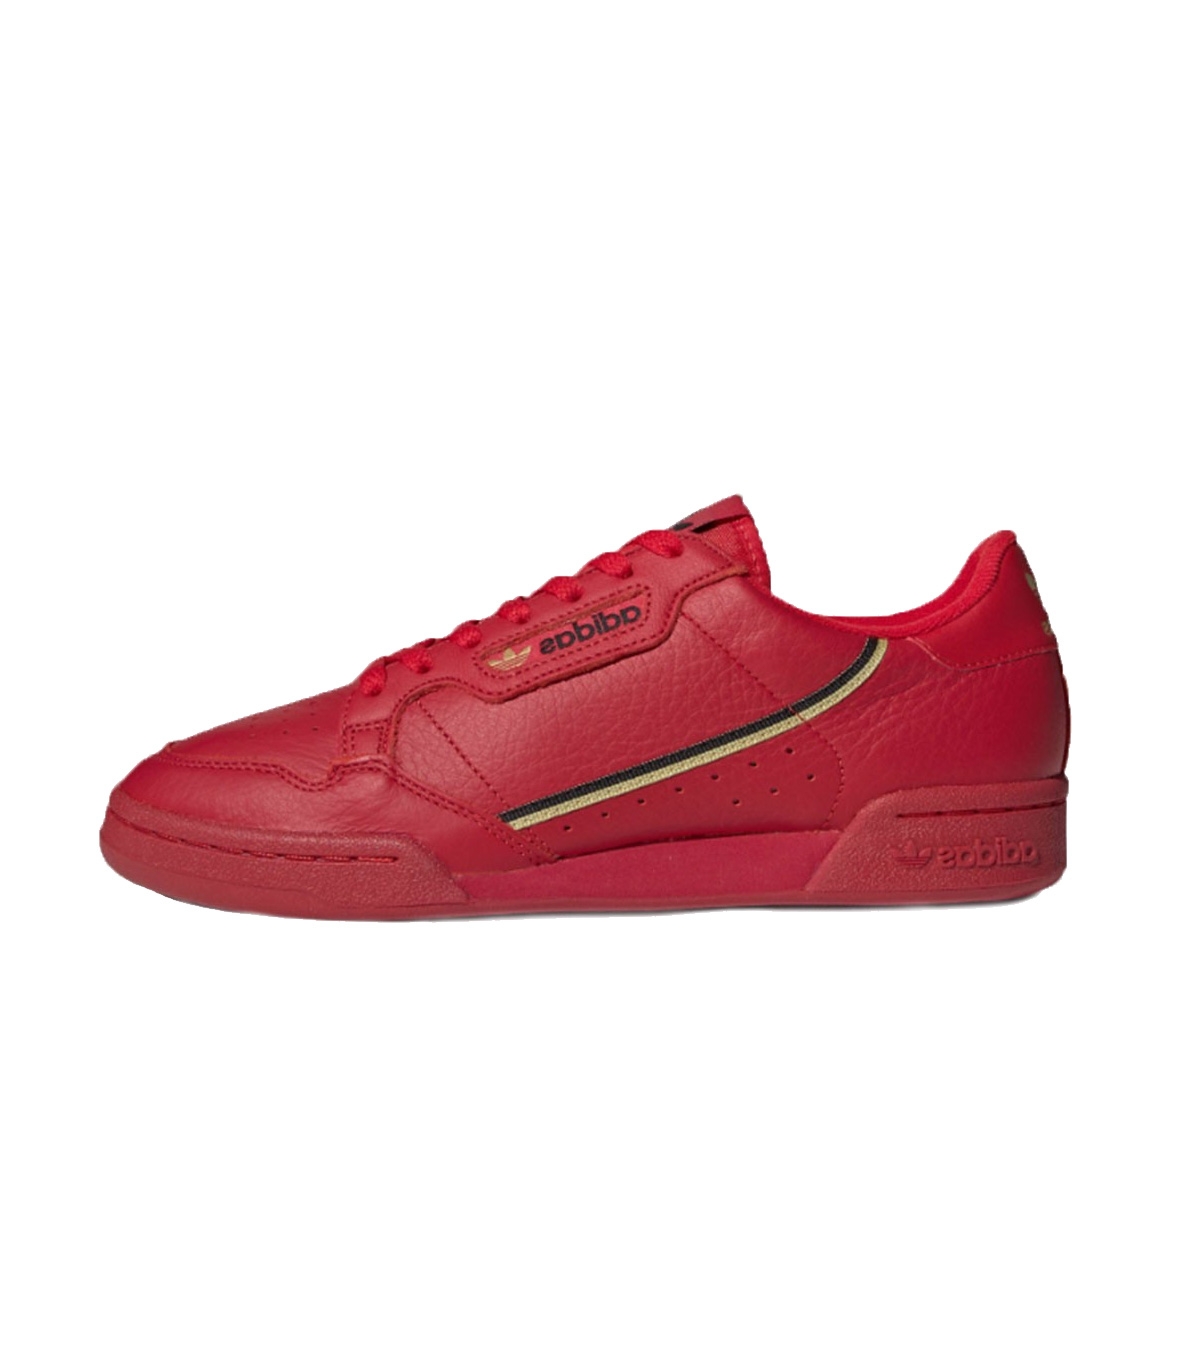 Adidas - Zapatillas para Mujer Rojas - Continental 80 R تونة تريفا